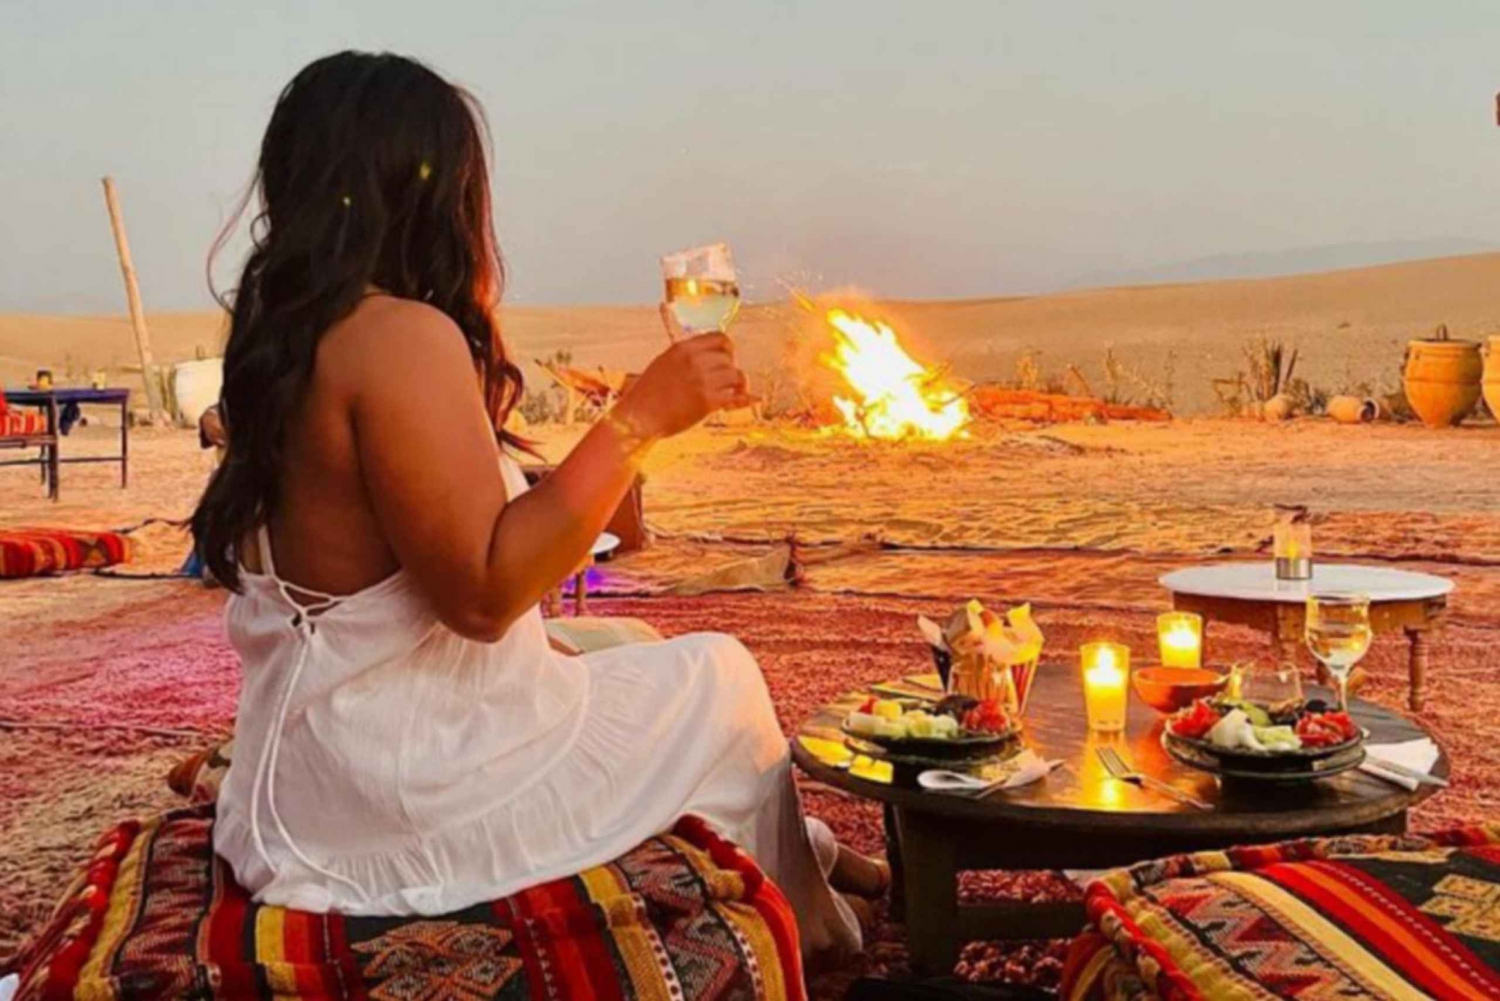 Marrakech: Agafay Desert Sunset, Dinner, Music and Fire Show